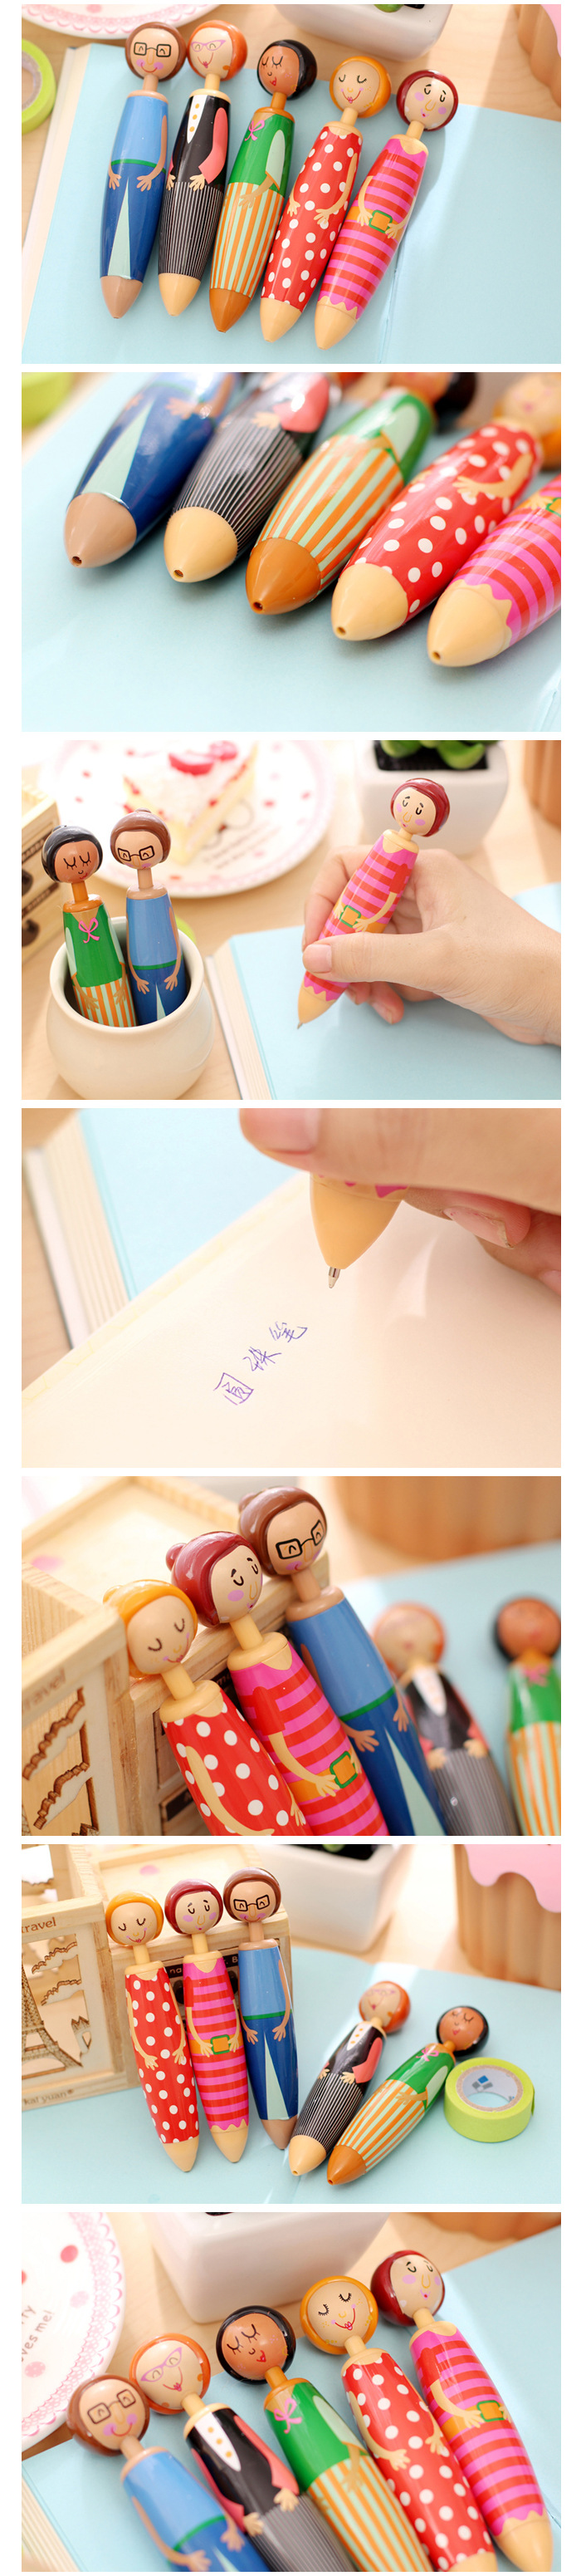 可愛人偶原子筆 創意造型胖胖筆 文具用品 造型原子筆 人物造型圓珠筆